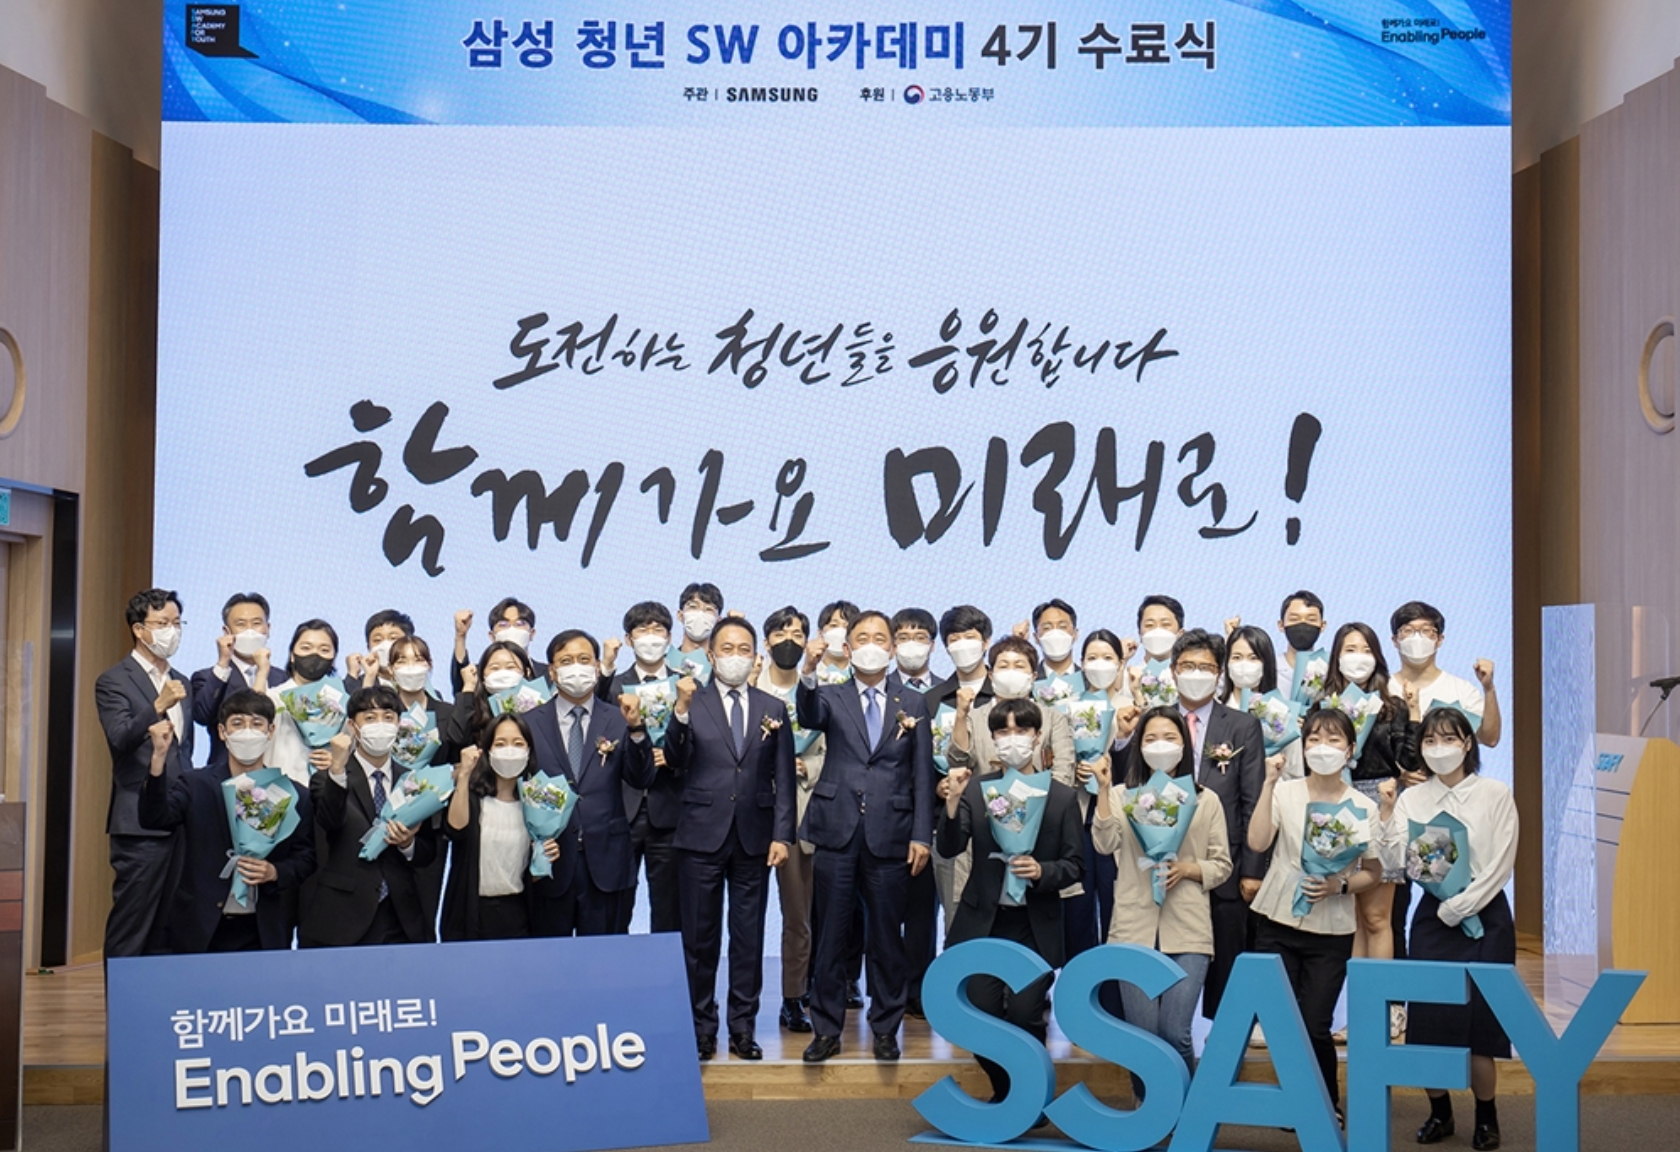 9일 서울 강남구 멀티캠퍼스 교육센터에서 열린 ‘삼성청년SW아카데미’ 4기 수료식에 참석한 수료생들과 관계자들이 기념 촬영하고 있다.